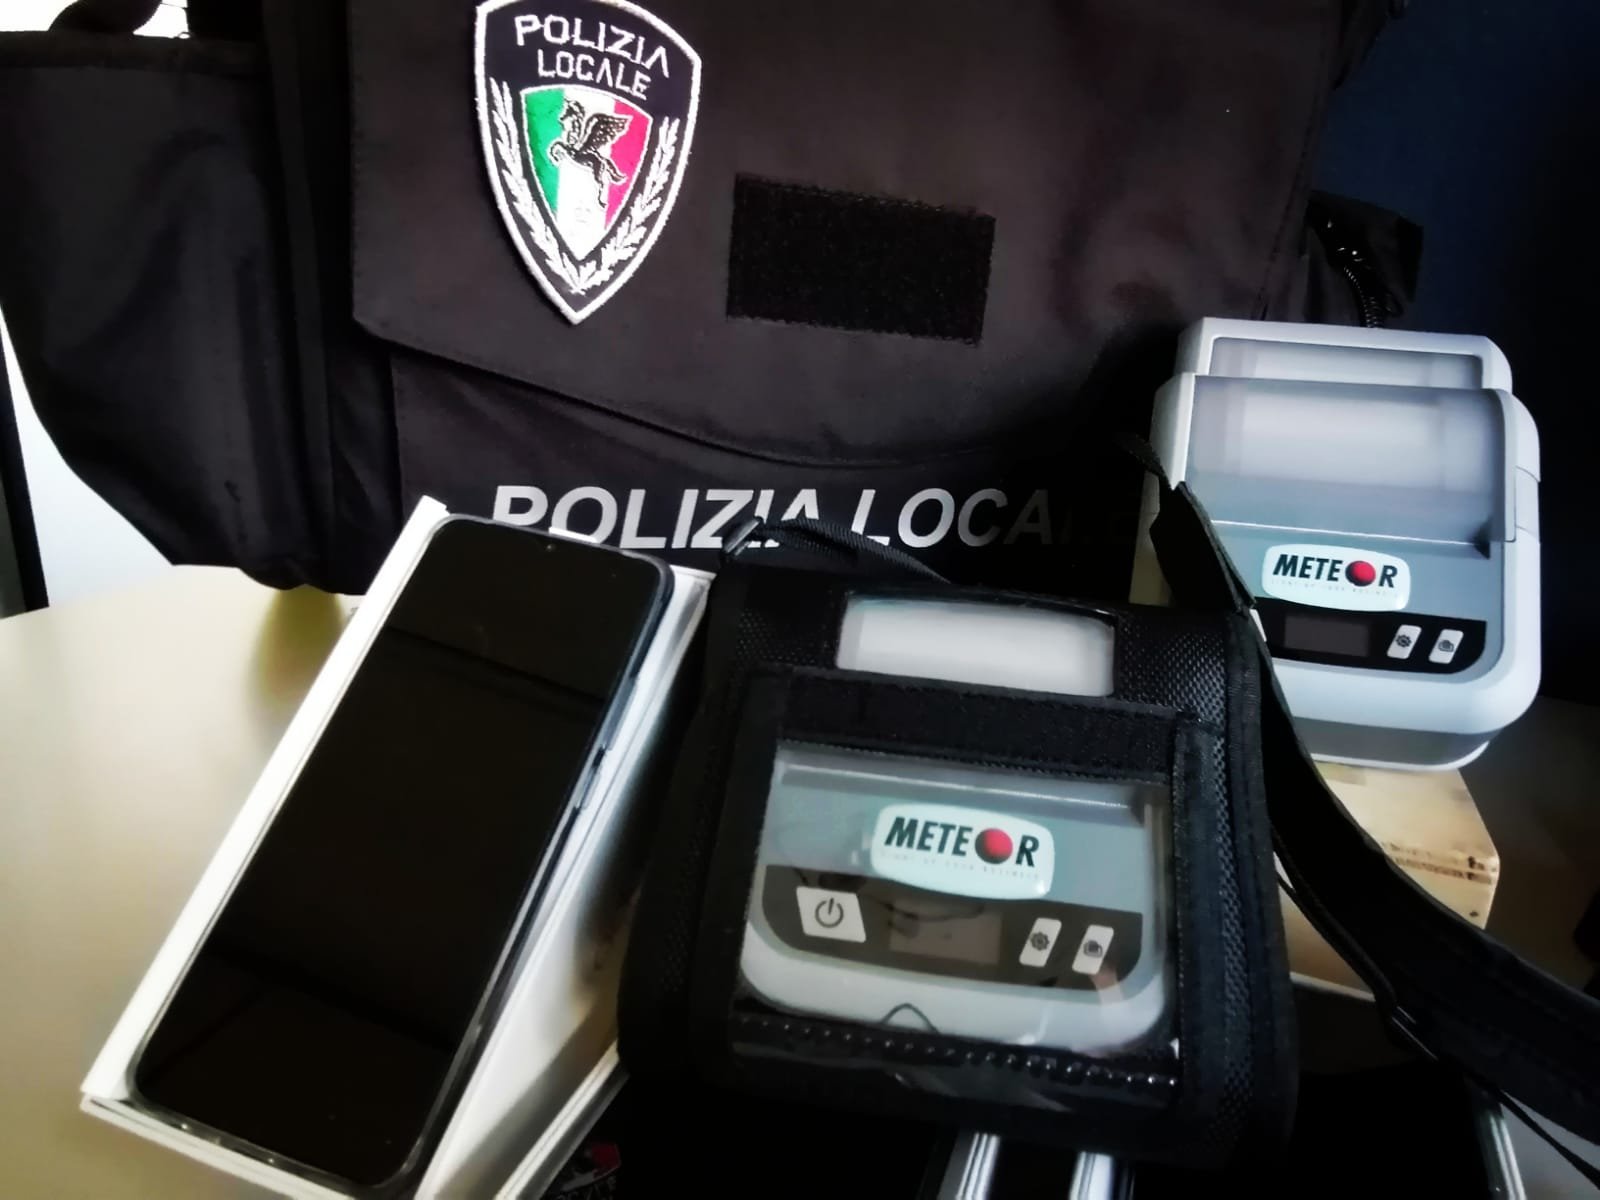 A Valenza la Polizia Locale dotata di palmari e stampanti portatili